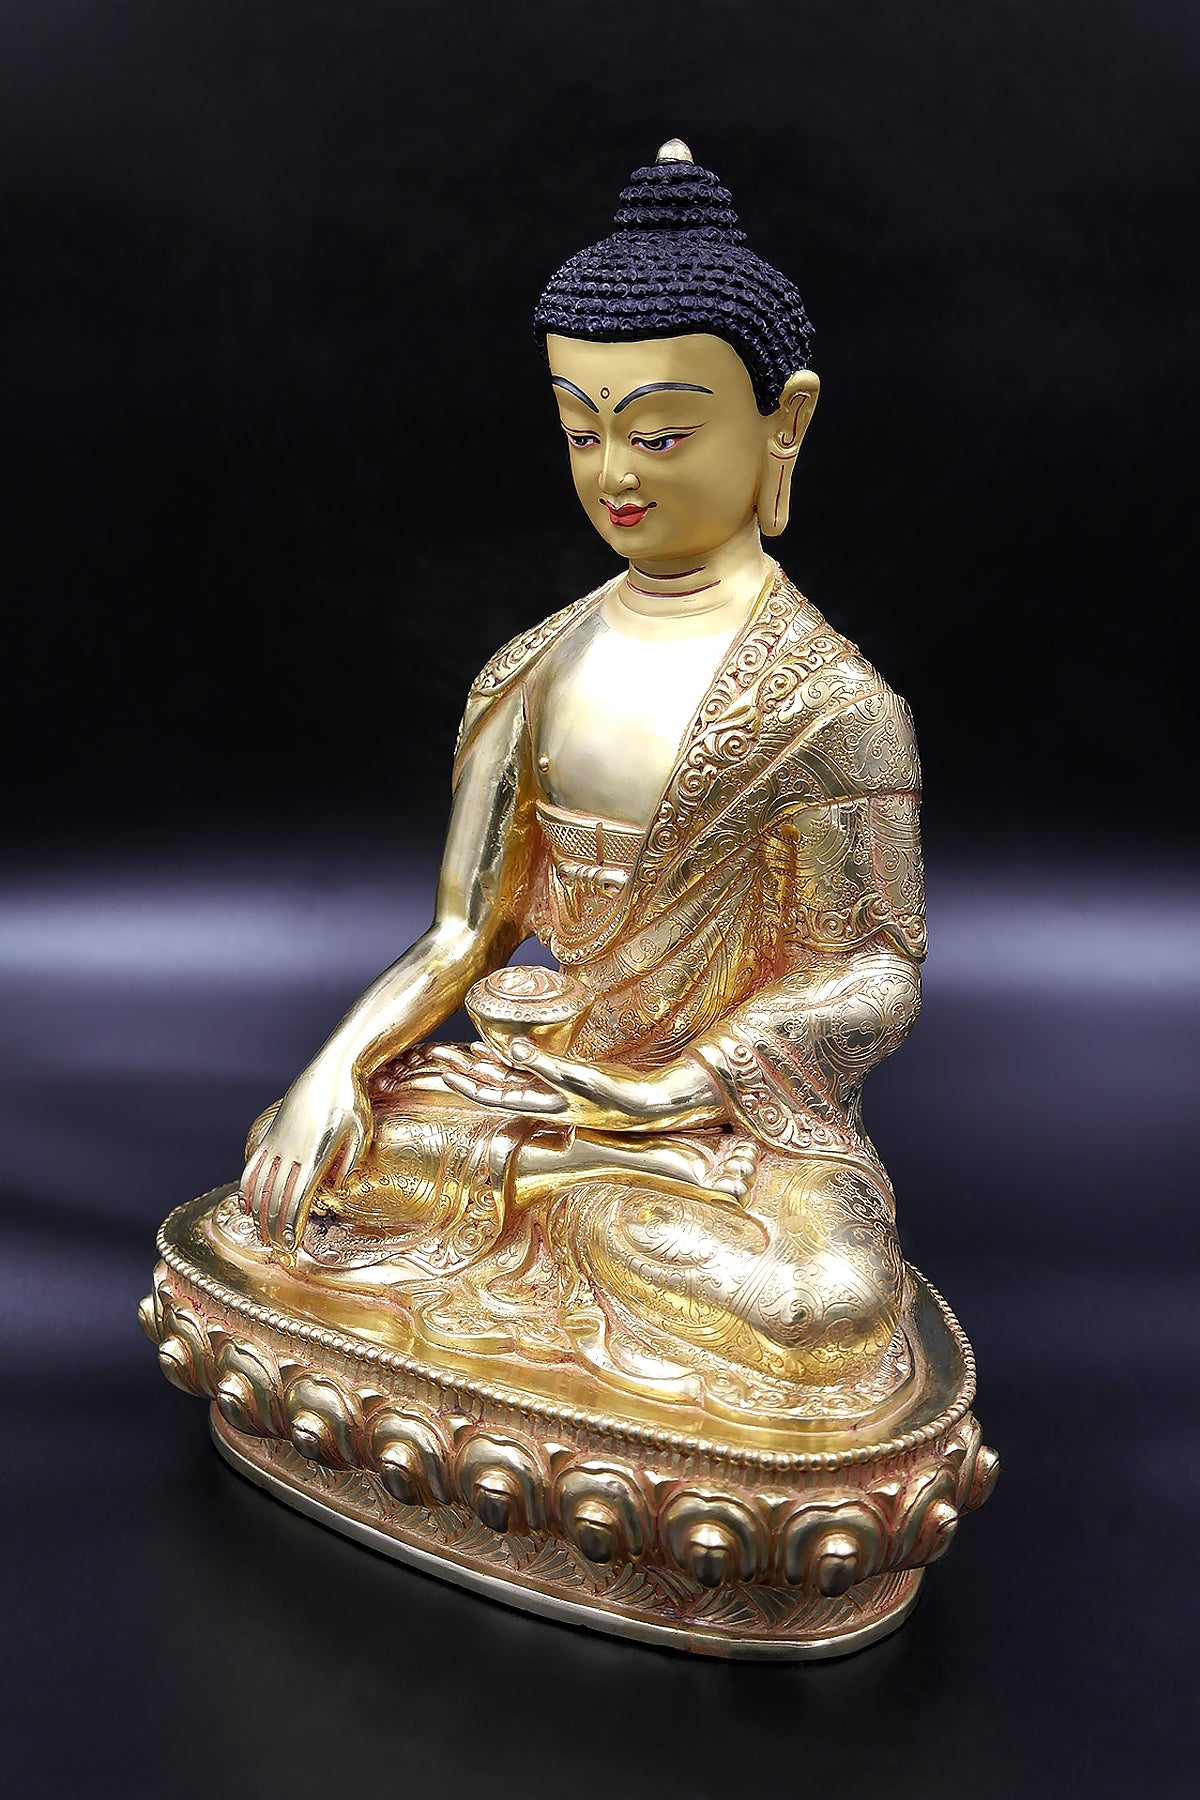 Shakyamuni Buddha Statues for Sale, 10"